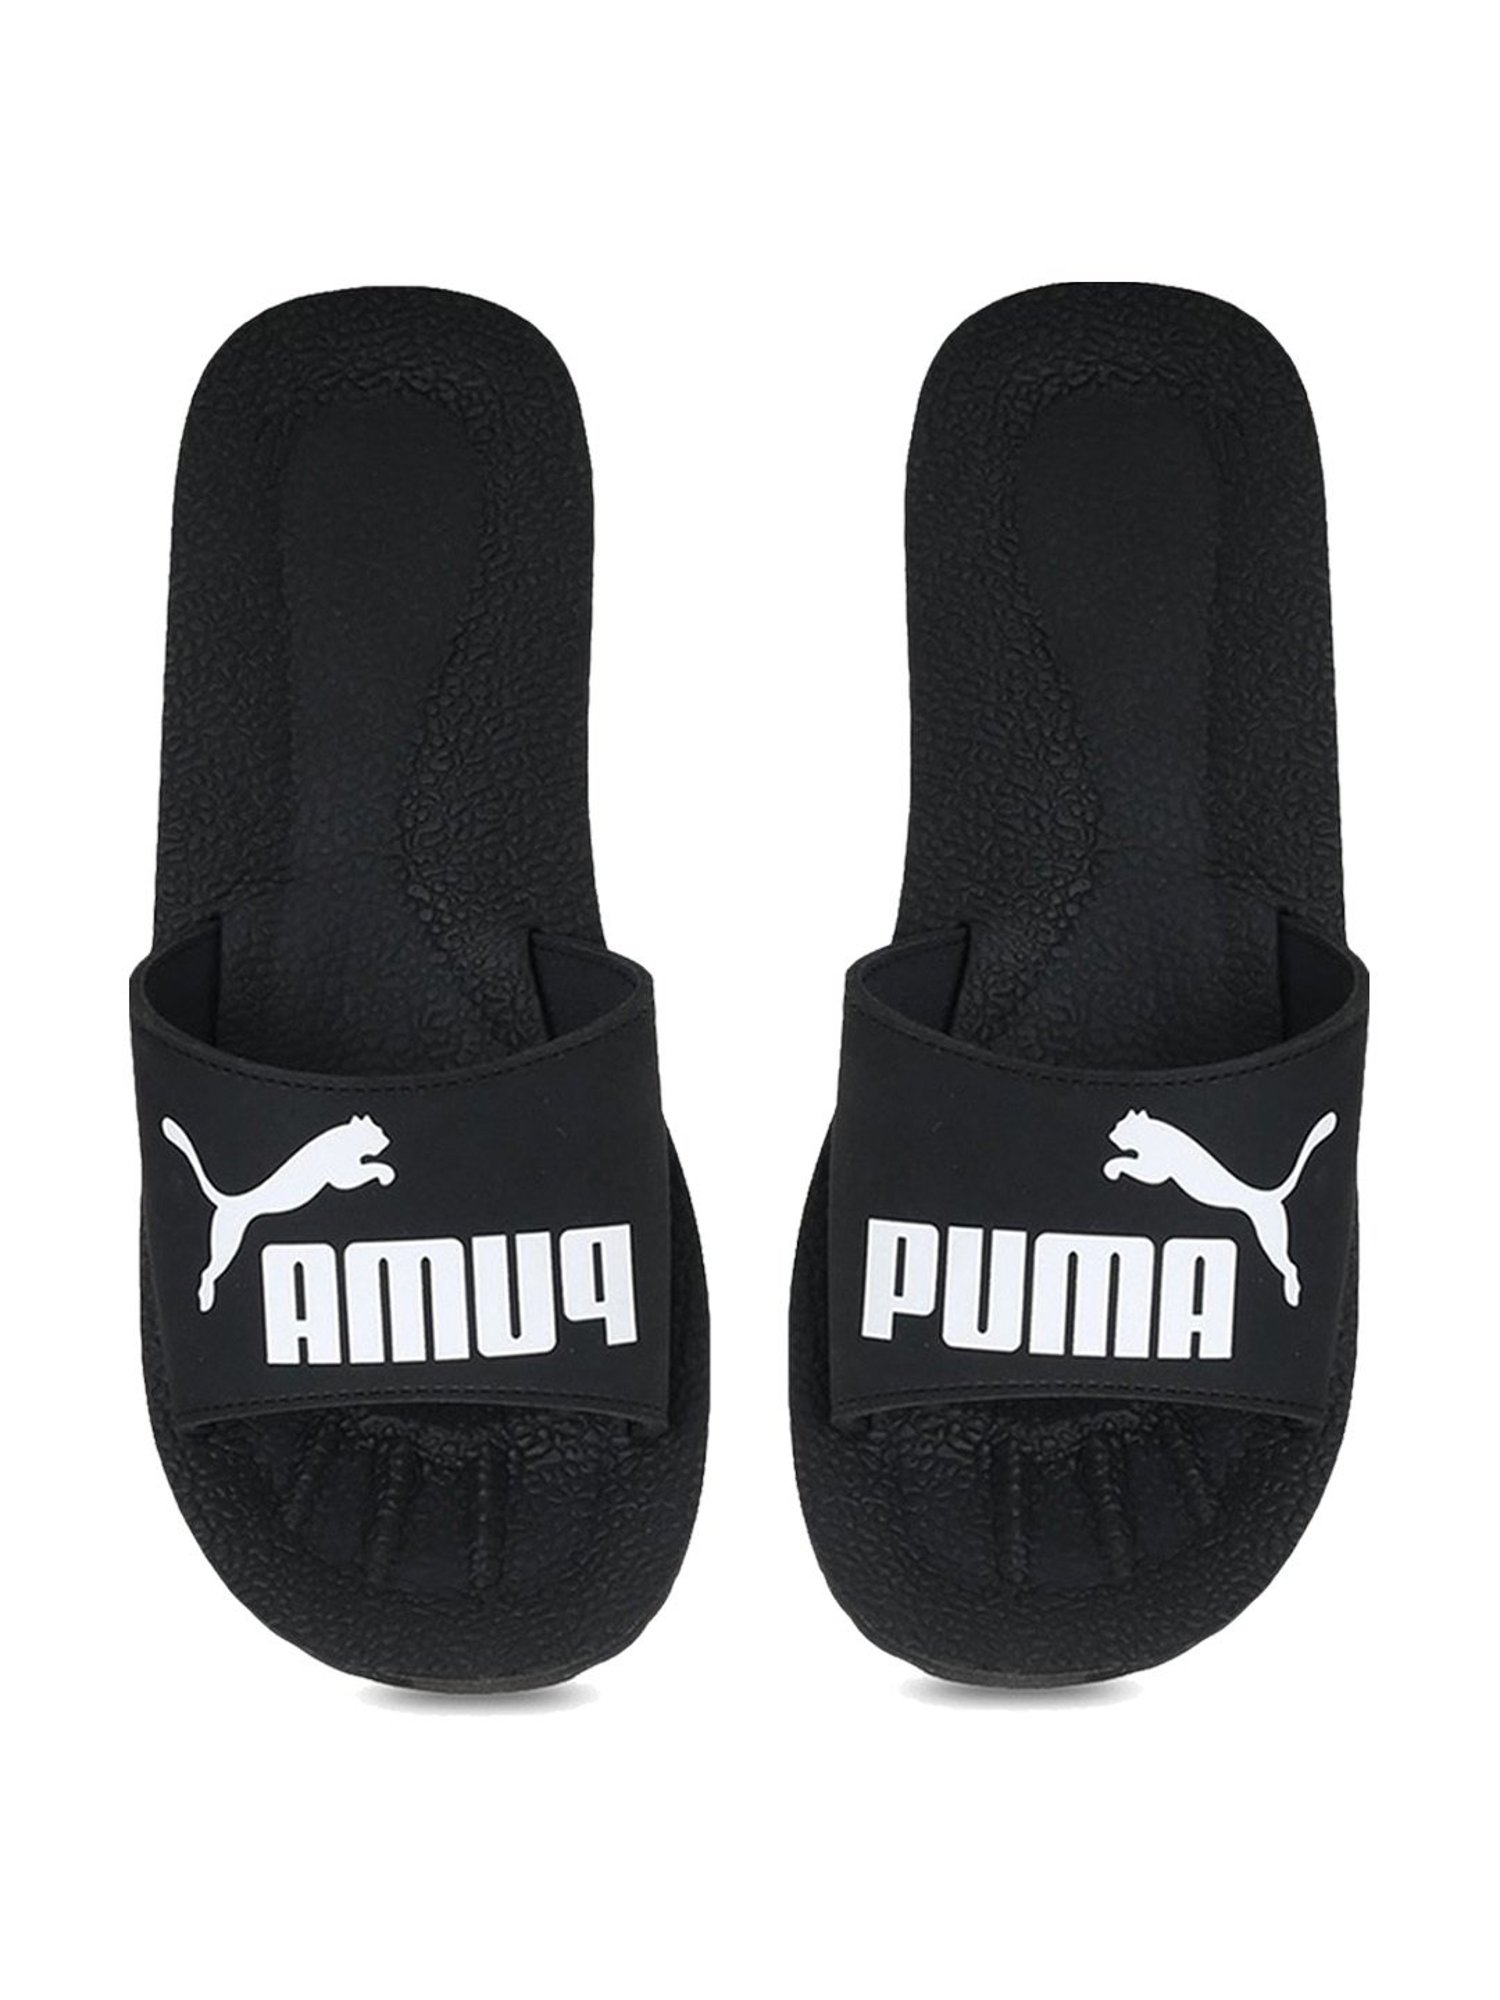 Rubber Slipper Unisex Puma Slippers For Men, Black at Rs 325/pair in New  Delhi